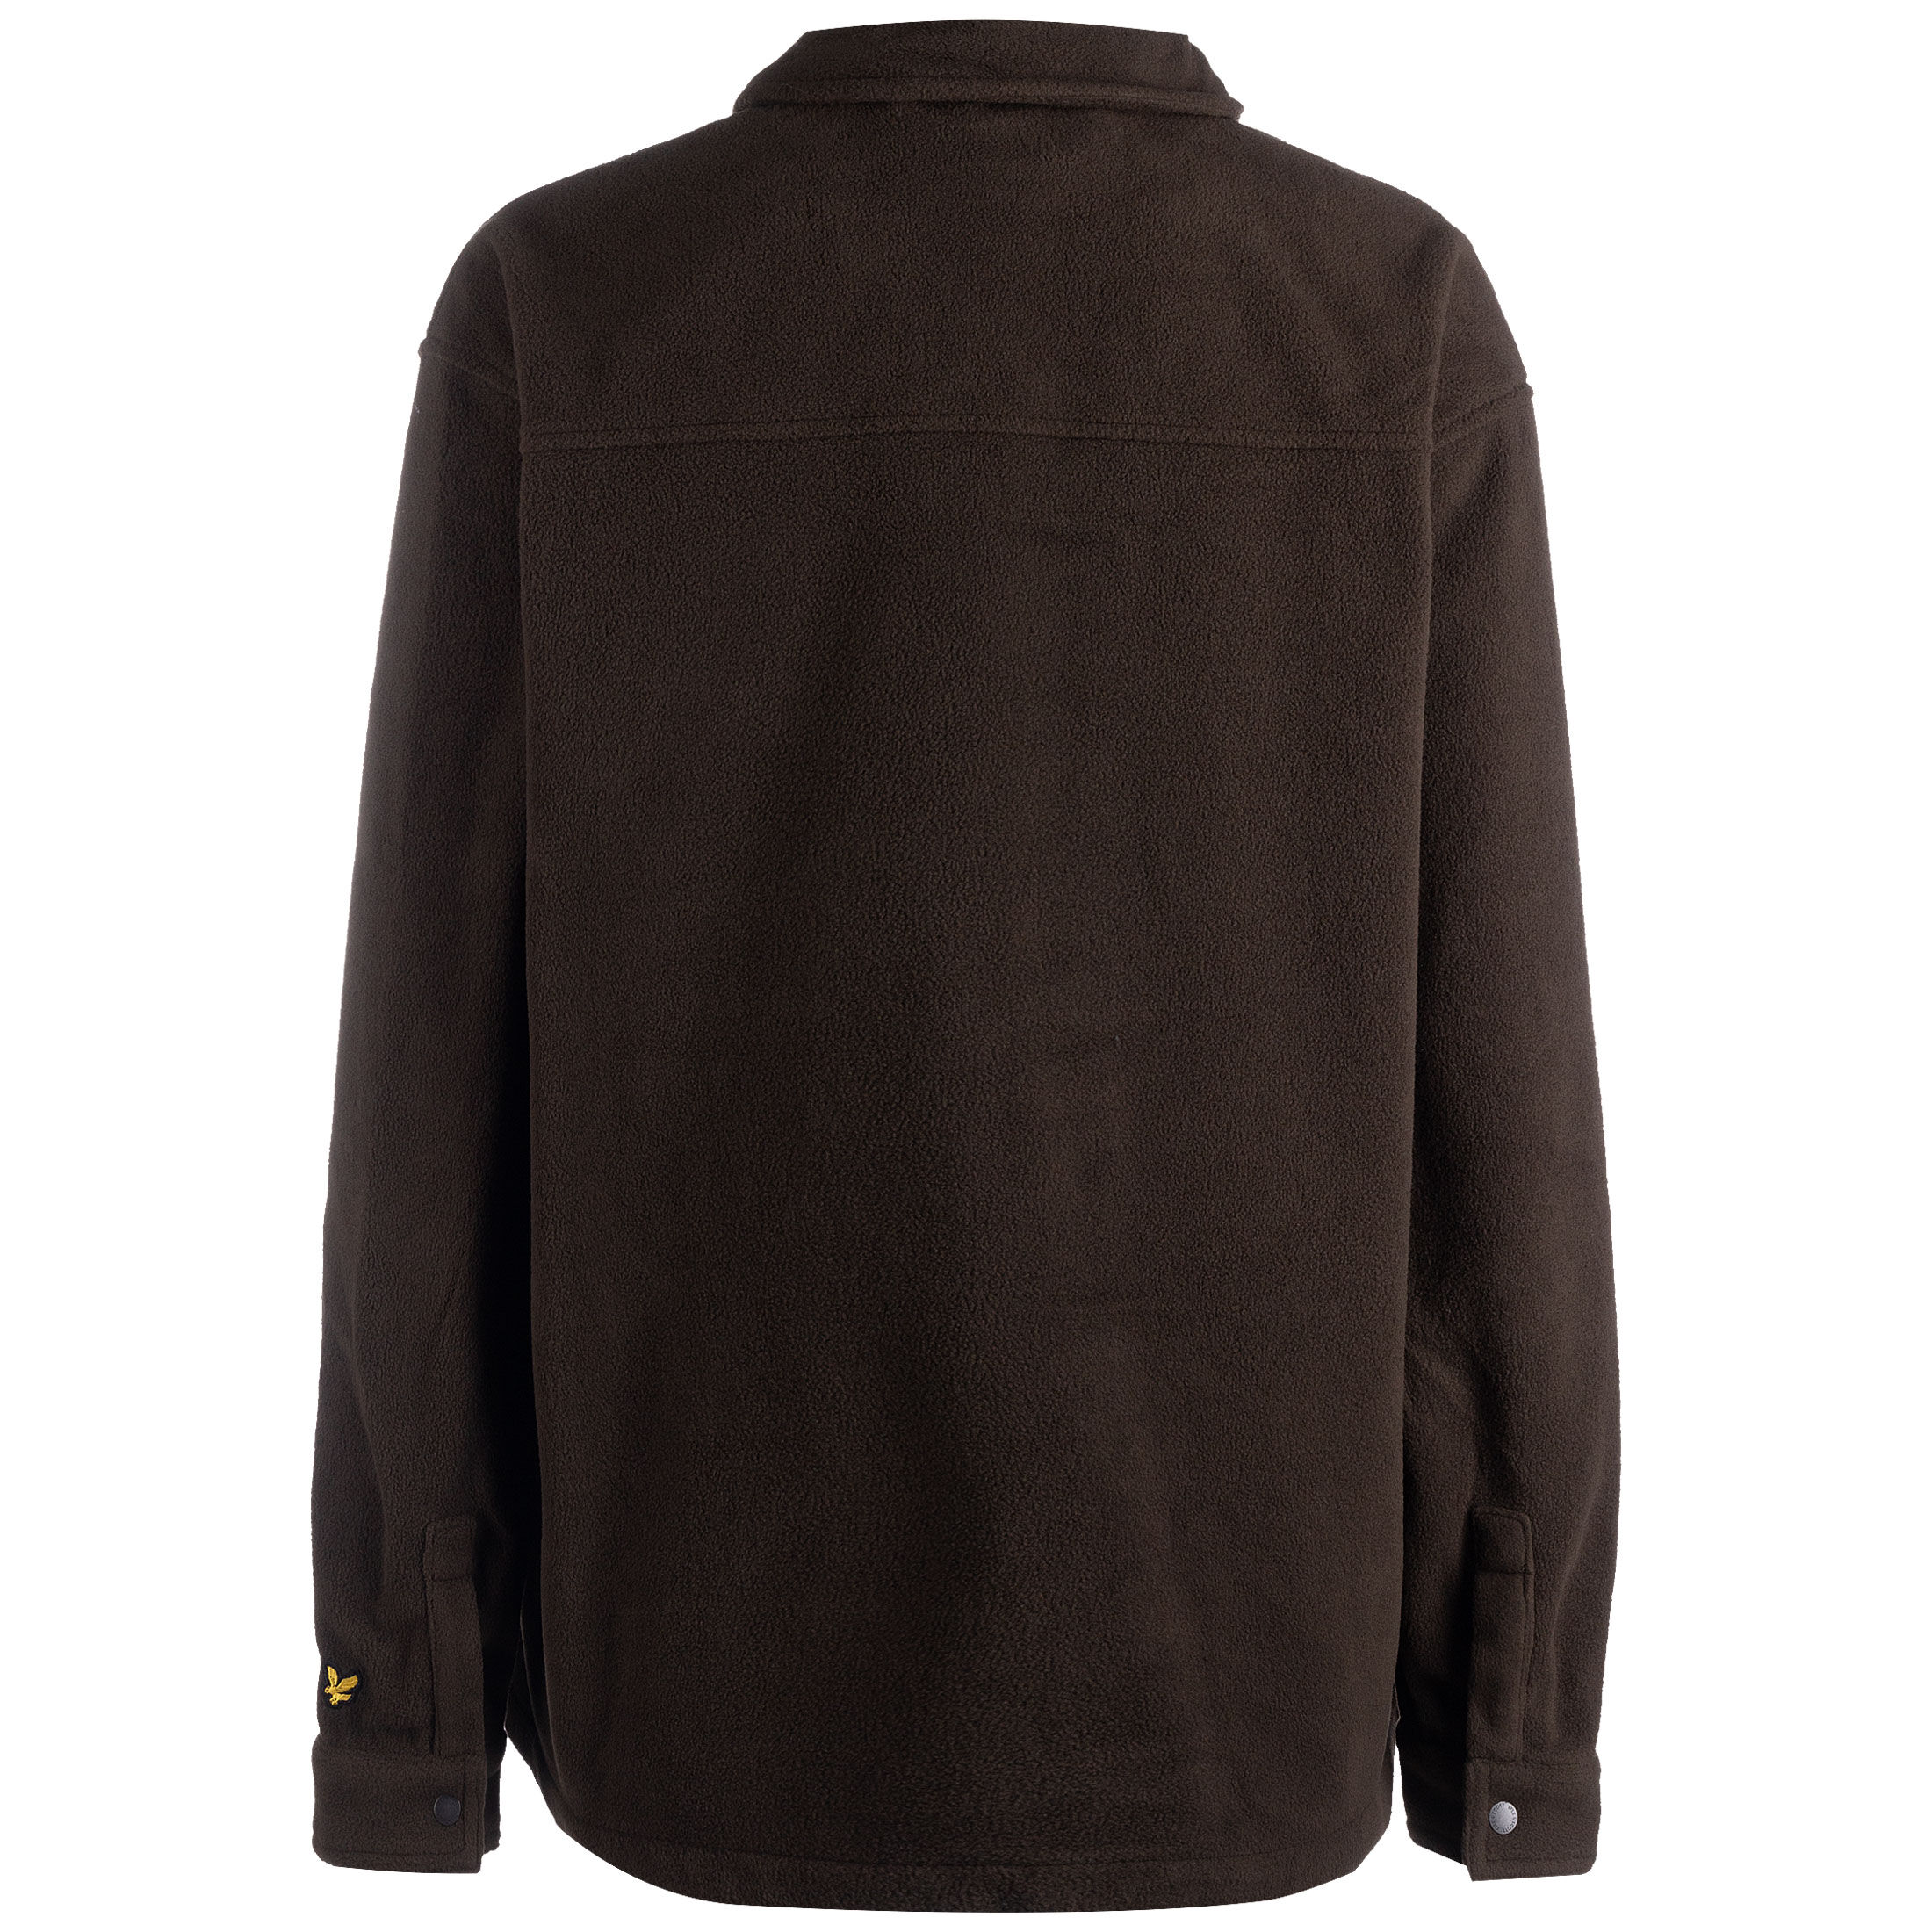 Рубашка Lyle & Scott Fleece Embroidered Fleece, коричневый